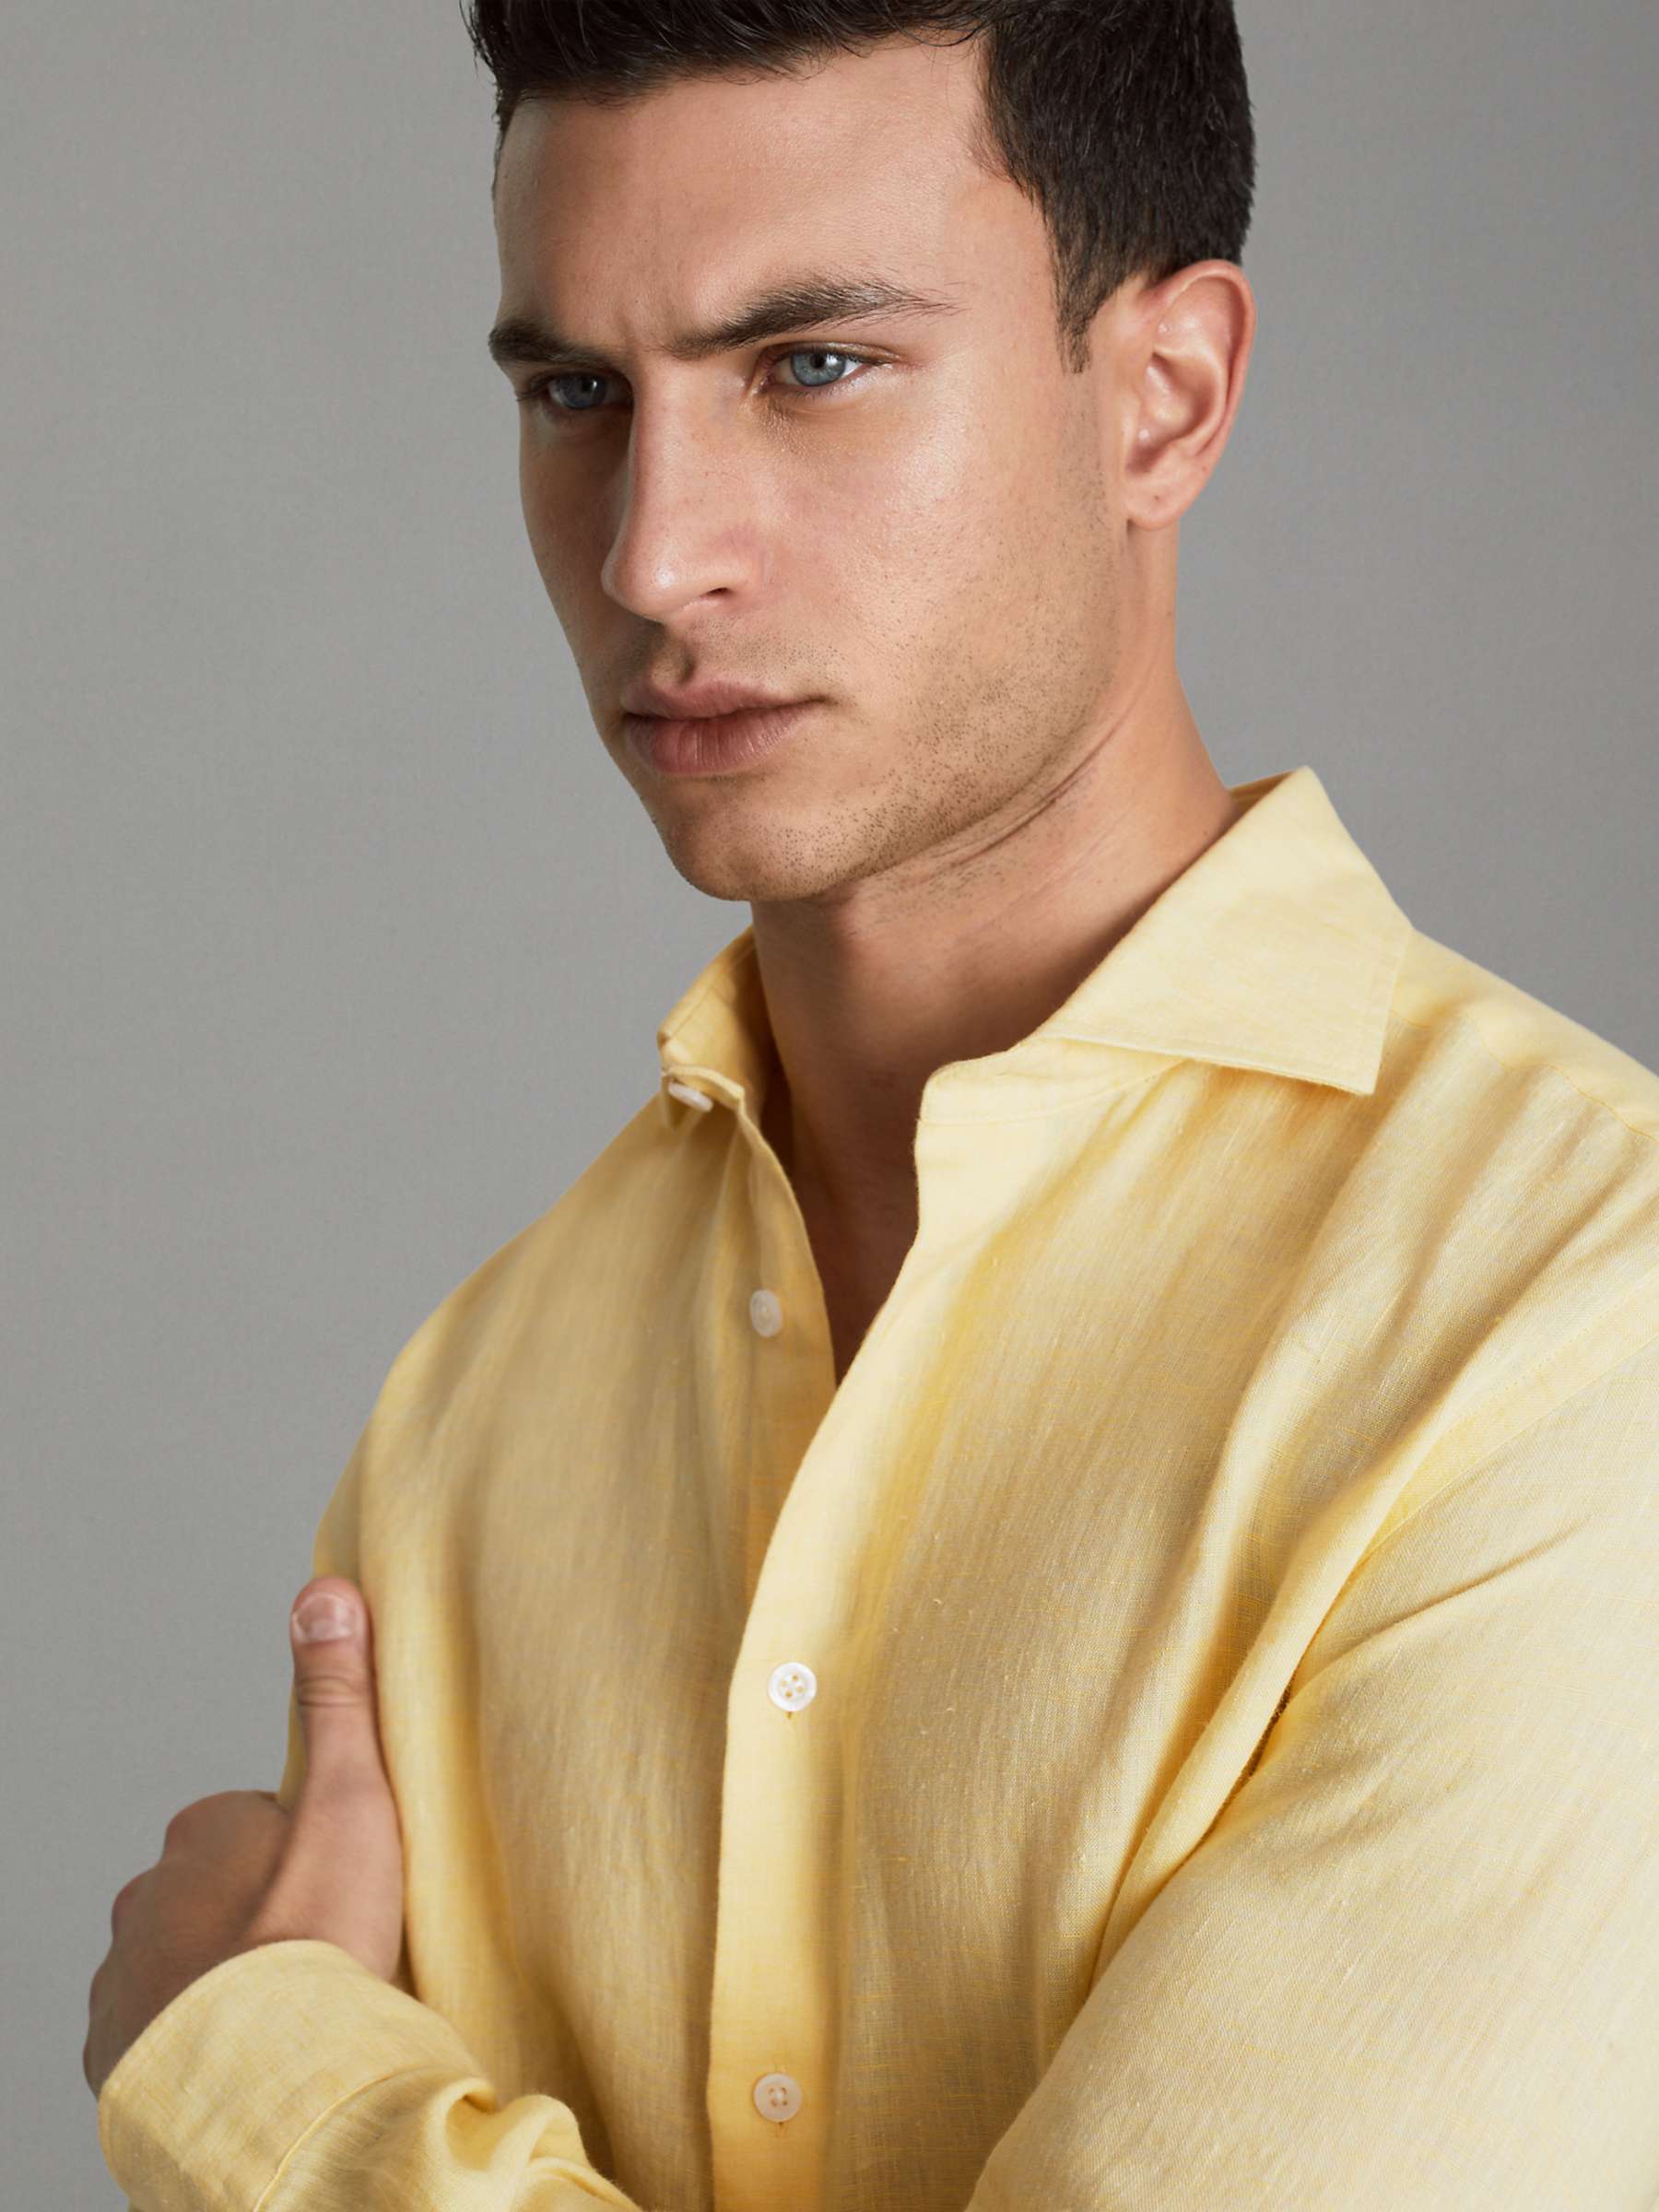 Buy Reiss Ruban Long Sleeve Linen Shirt Online at johnlewis.com